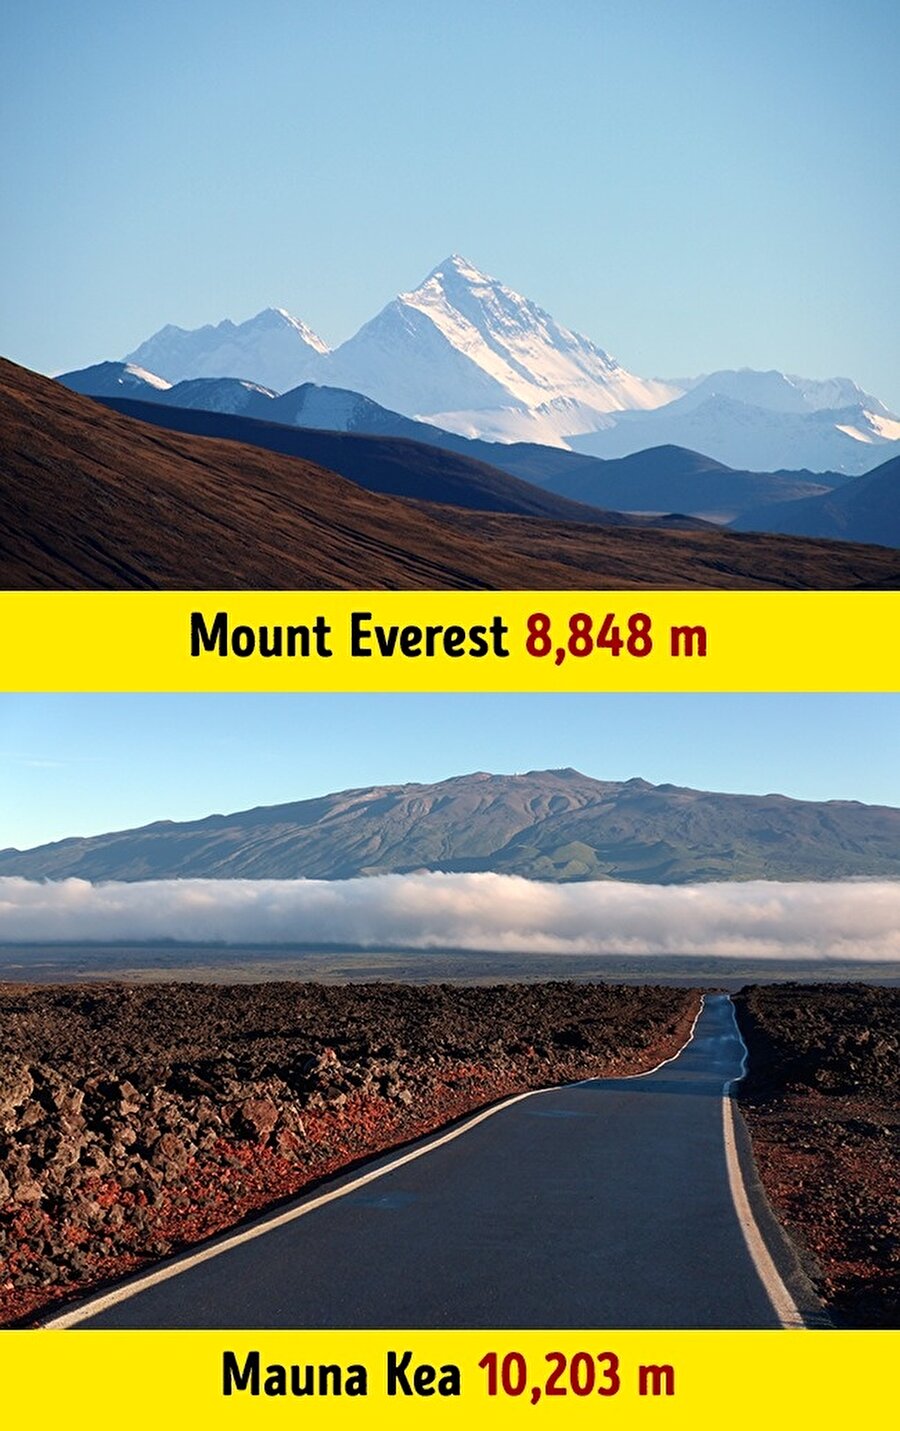 ​Everest Dağı, dünyadaki en uzun dağ değildir. Ölçüm deniz seviyesinden yapıldığında Hawaii'deki Mauna Kea'nın, 10.203 metre ile Everest'ten daha yüksek konumda olduğu biliniyor. 

                                    
                                